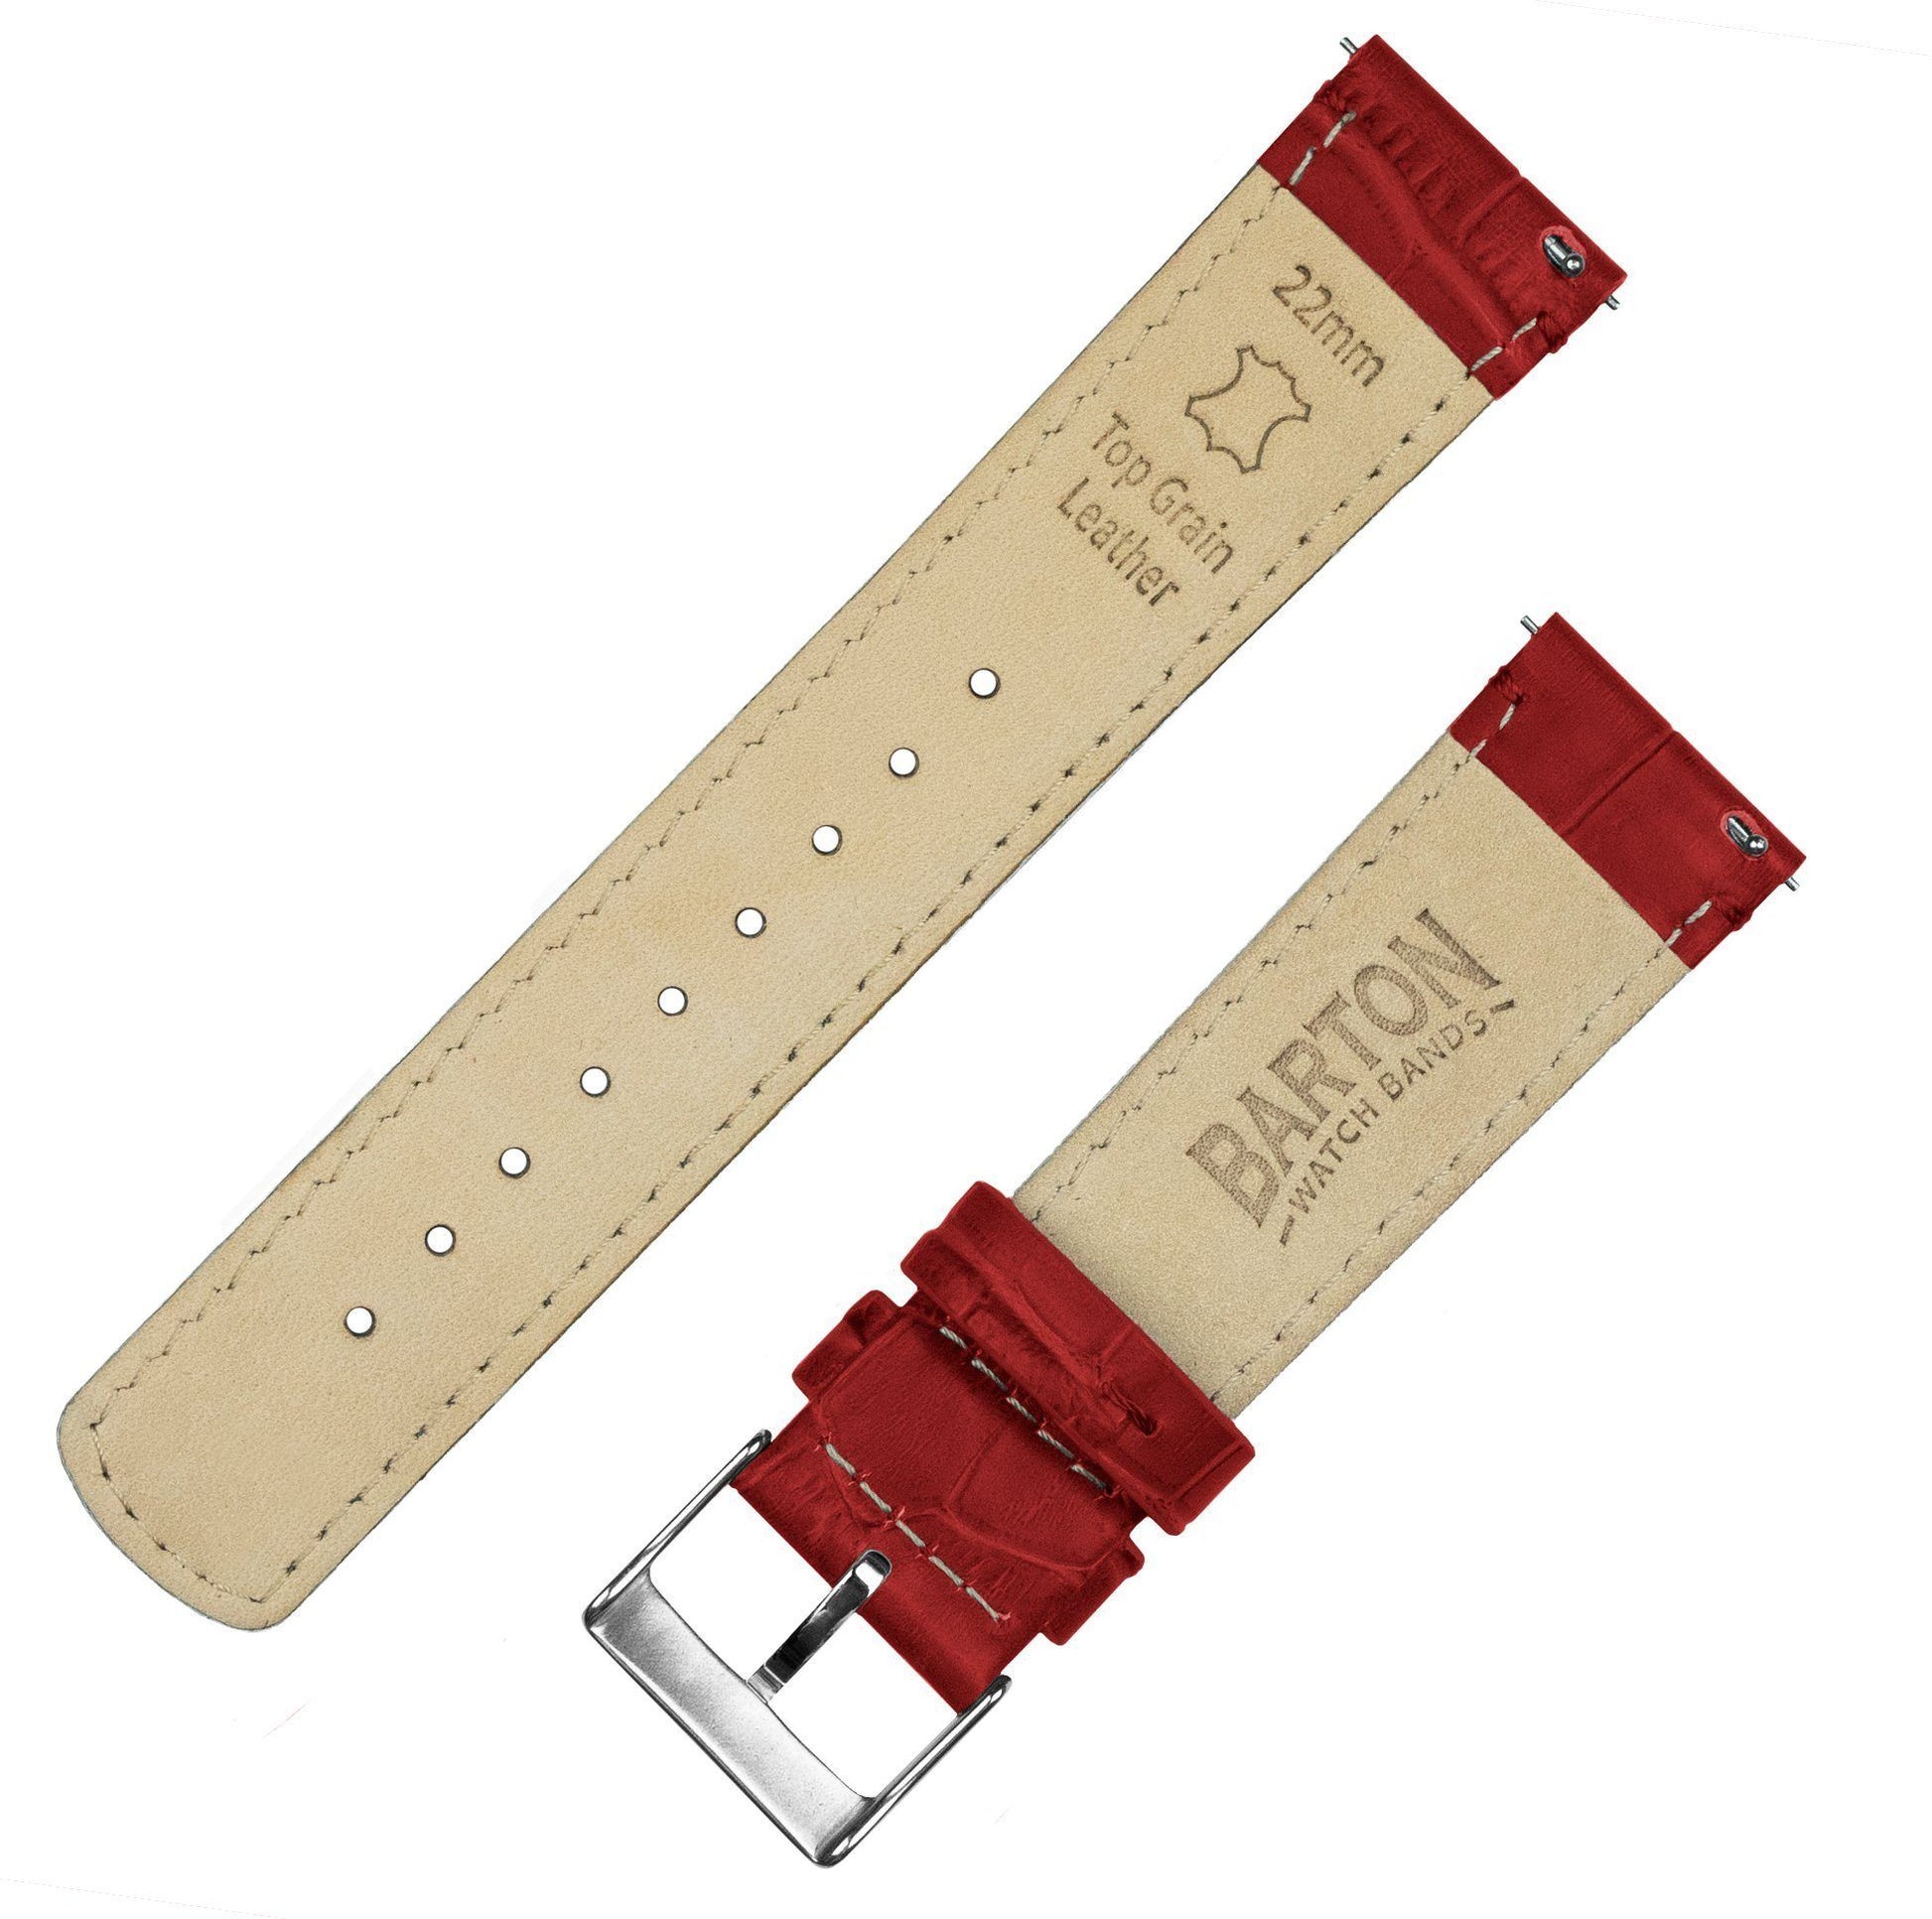 Moto 360 Gen2 | Crimson Red Alligator Grain Leather - Barton Watch Bands